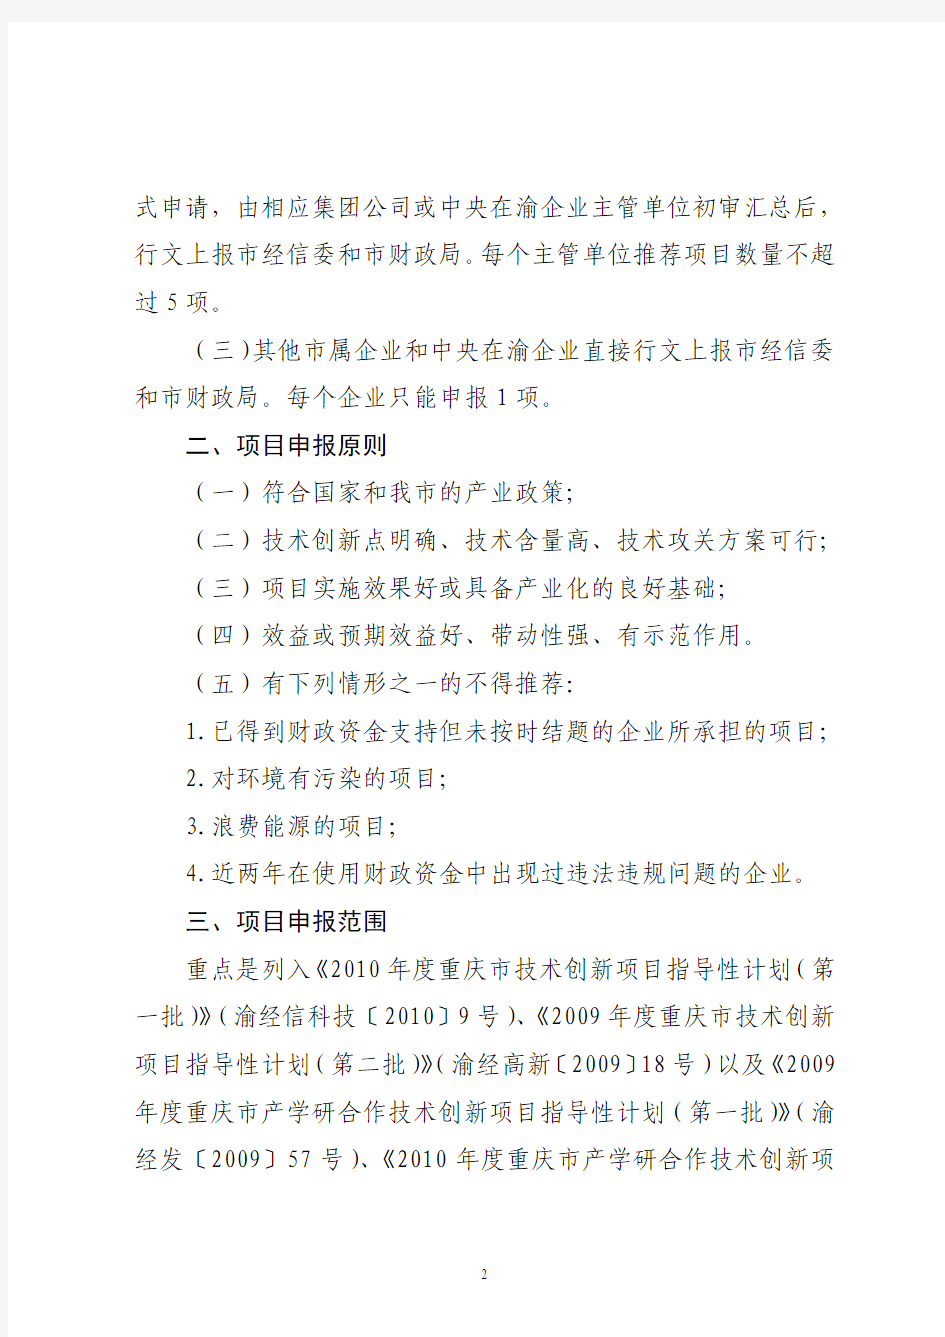 关于申报2010年重庆市工业发展专项资金(产业研发)项目的通知